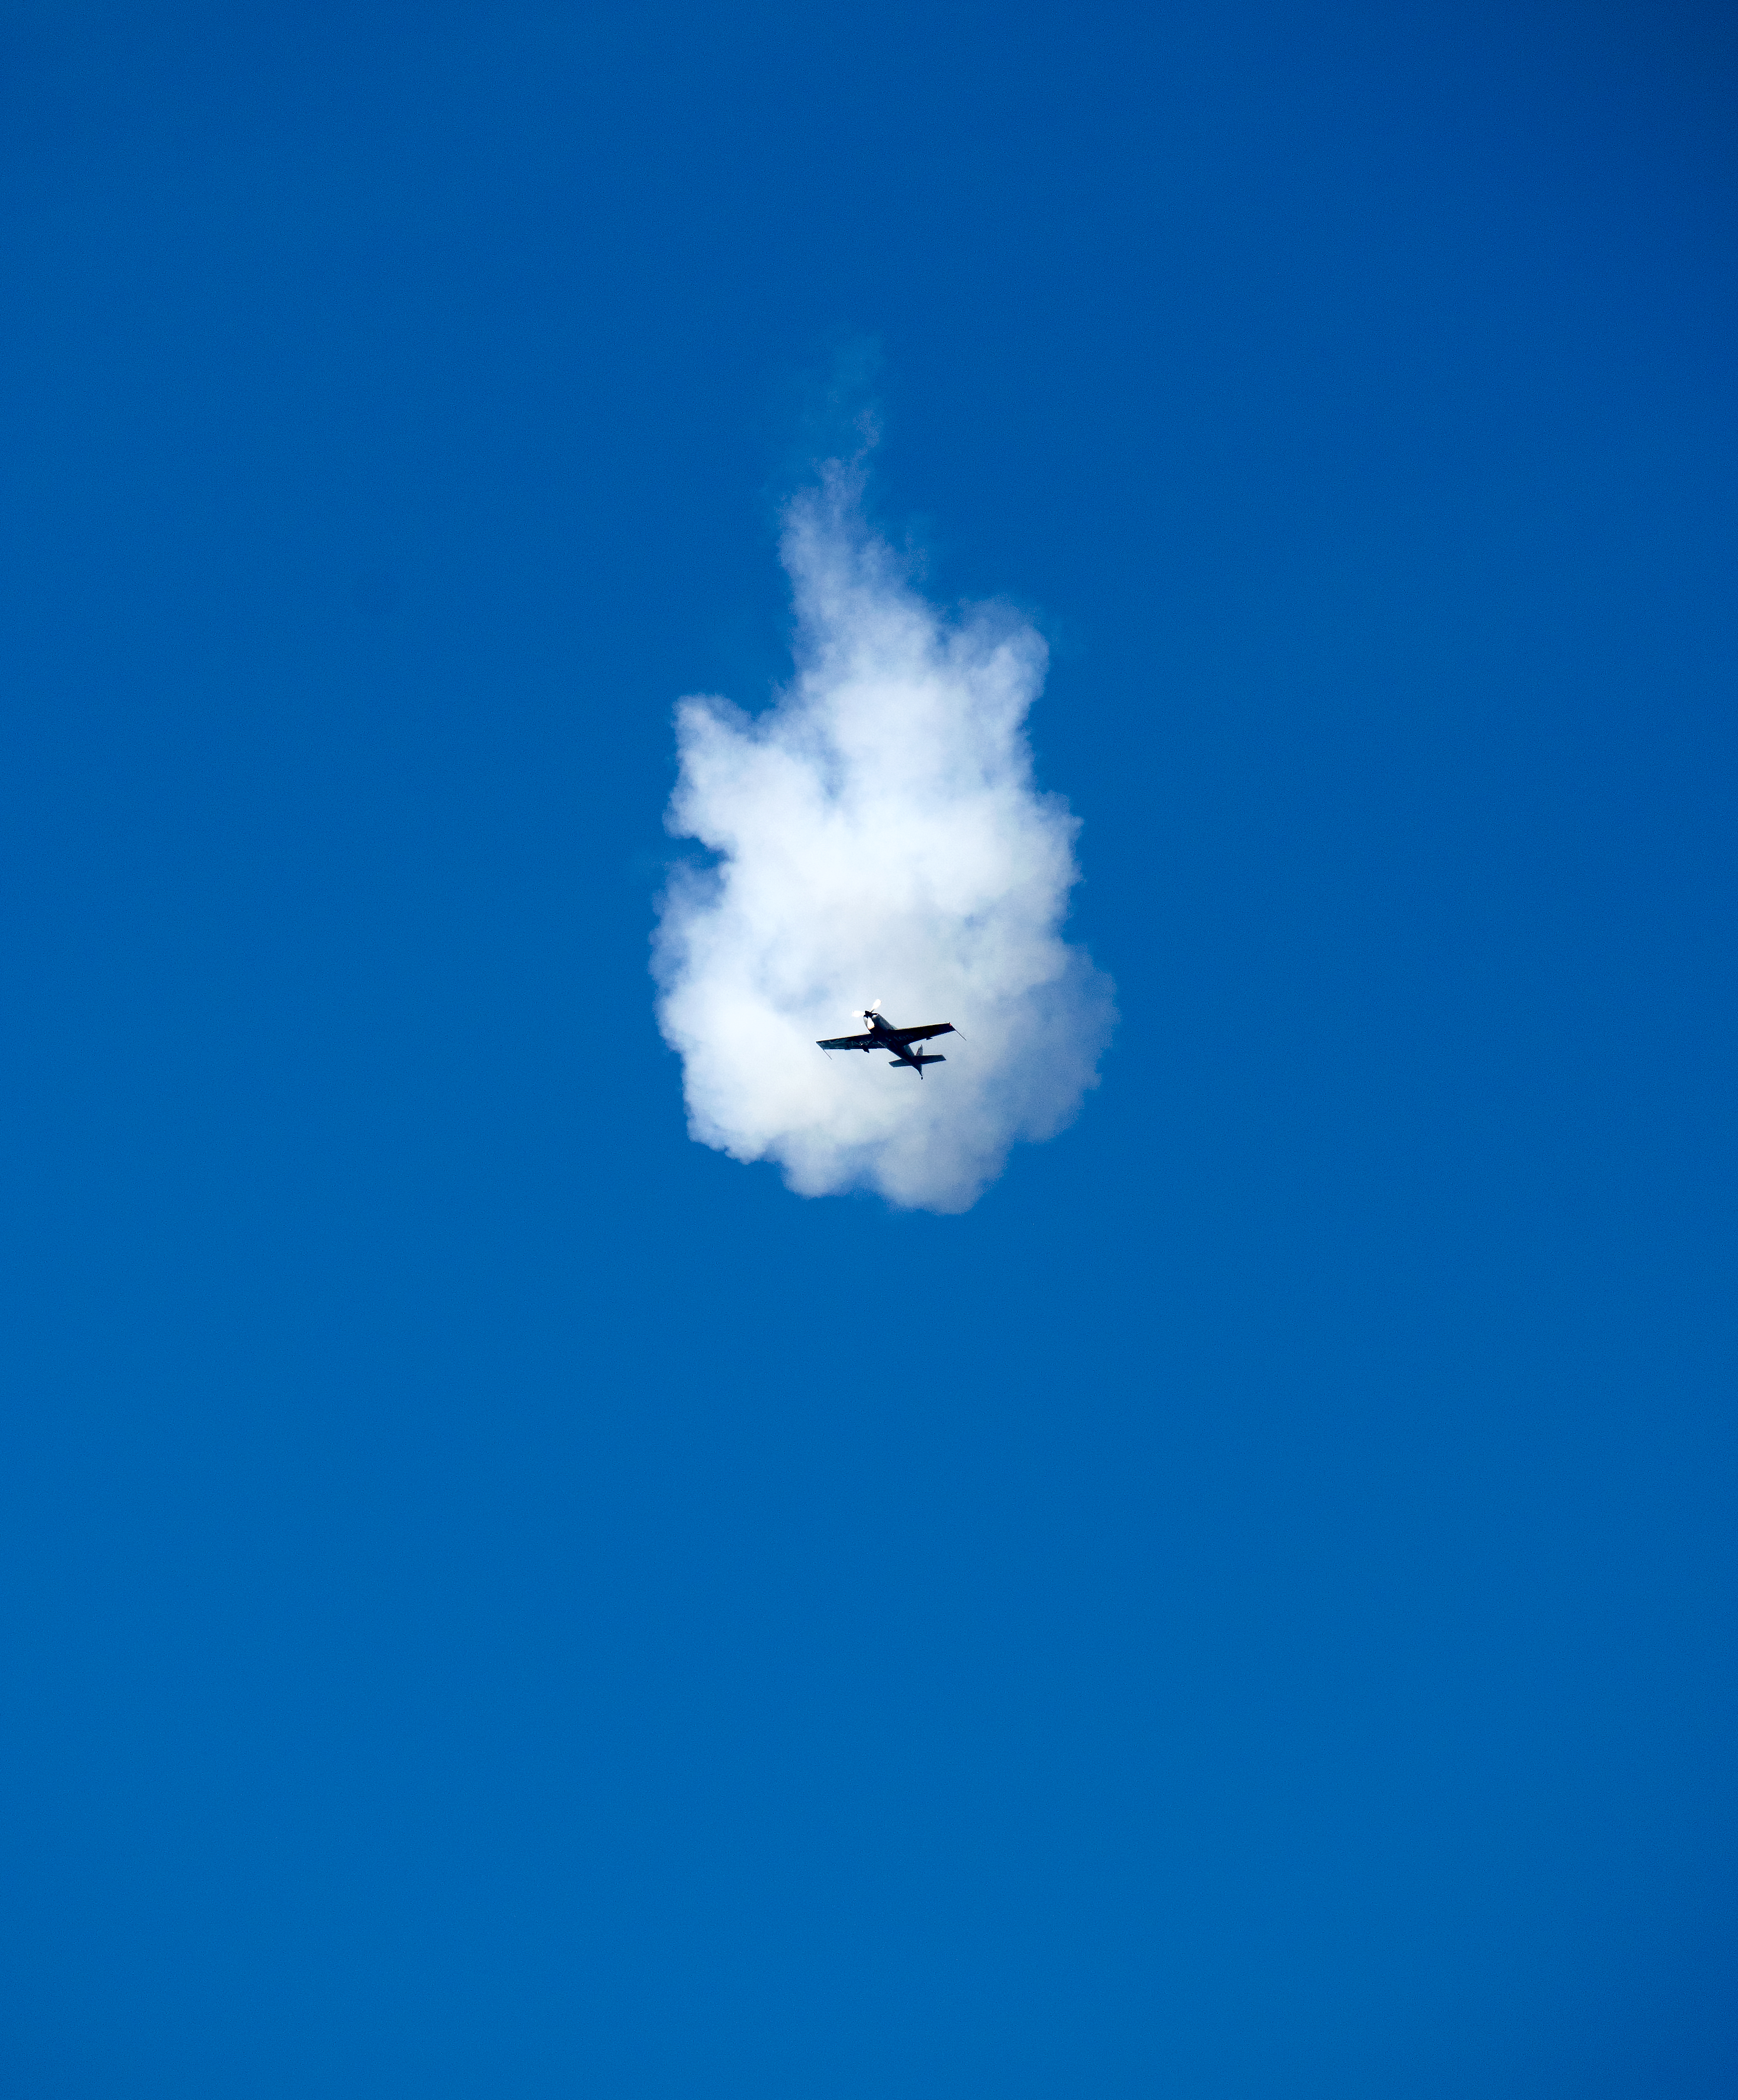 Plane through a cloud